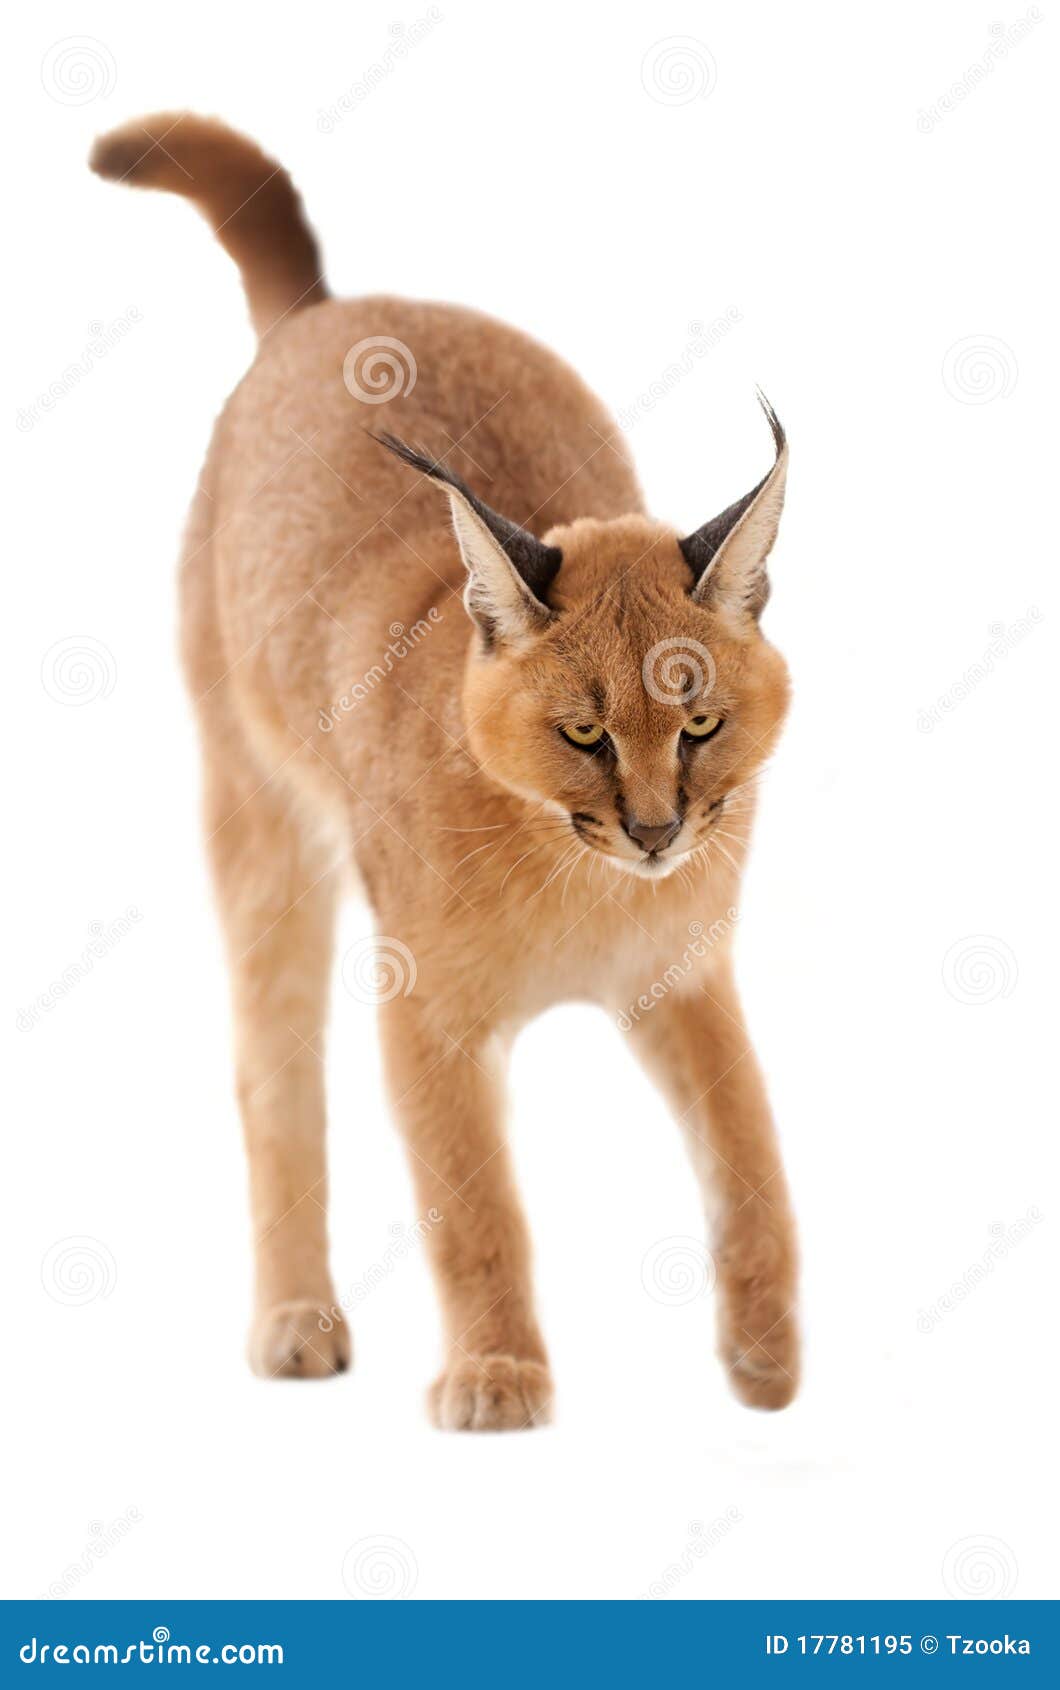 caracal cat